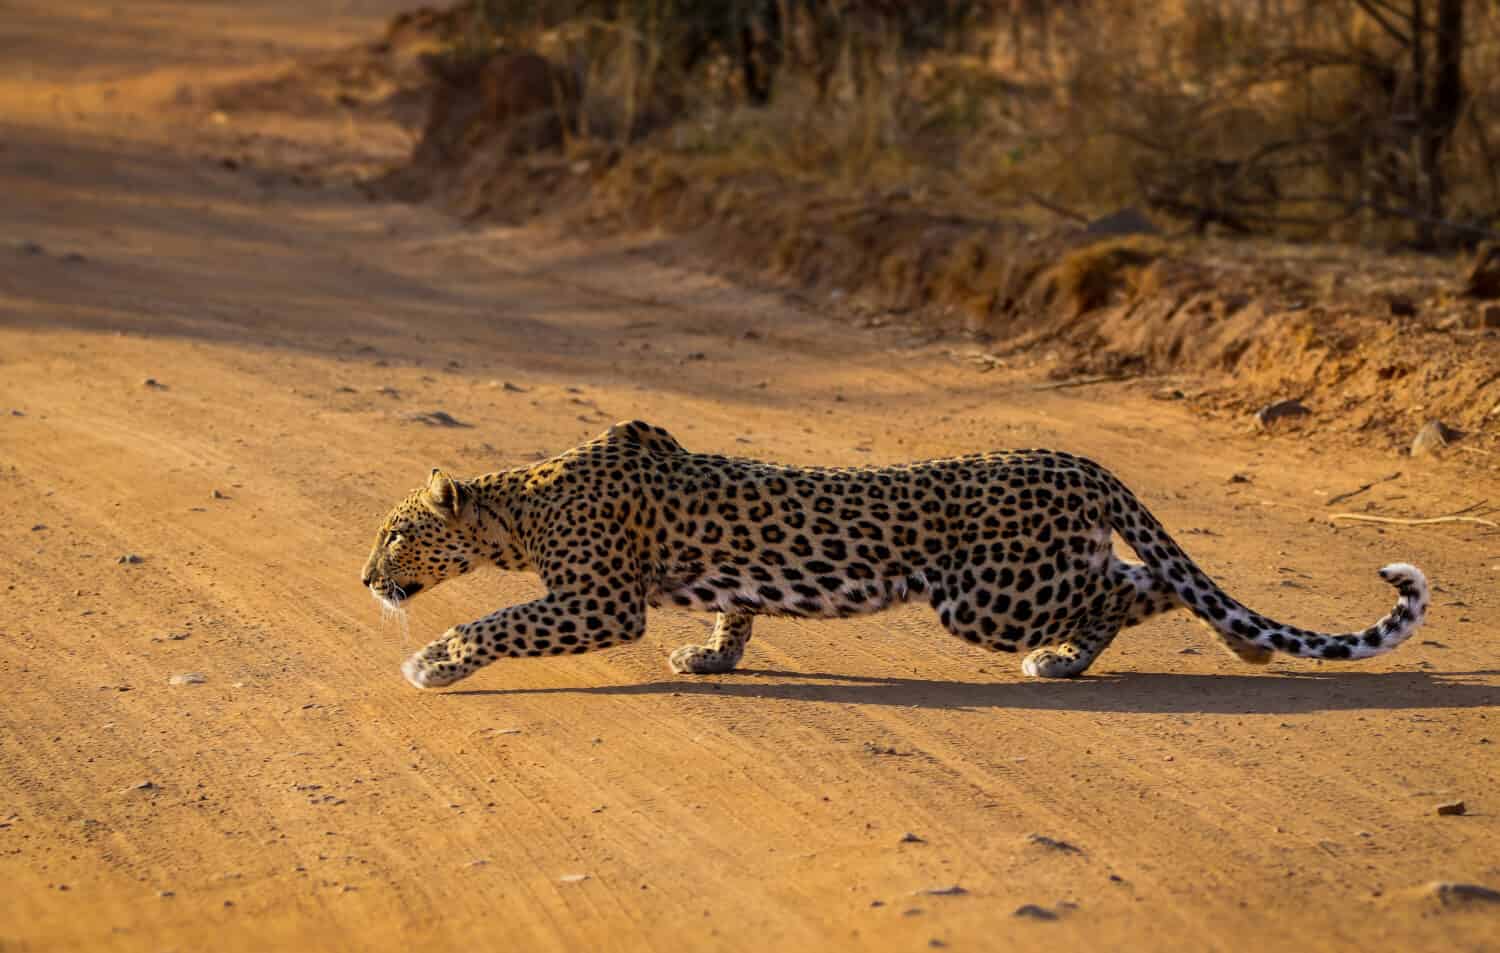 Leopard stalking a herd of wildebeests